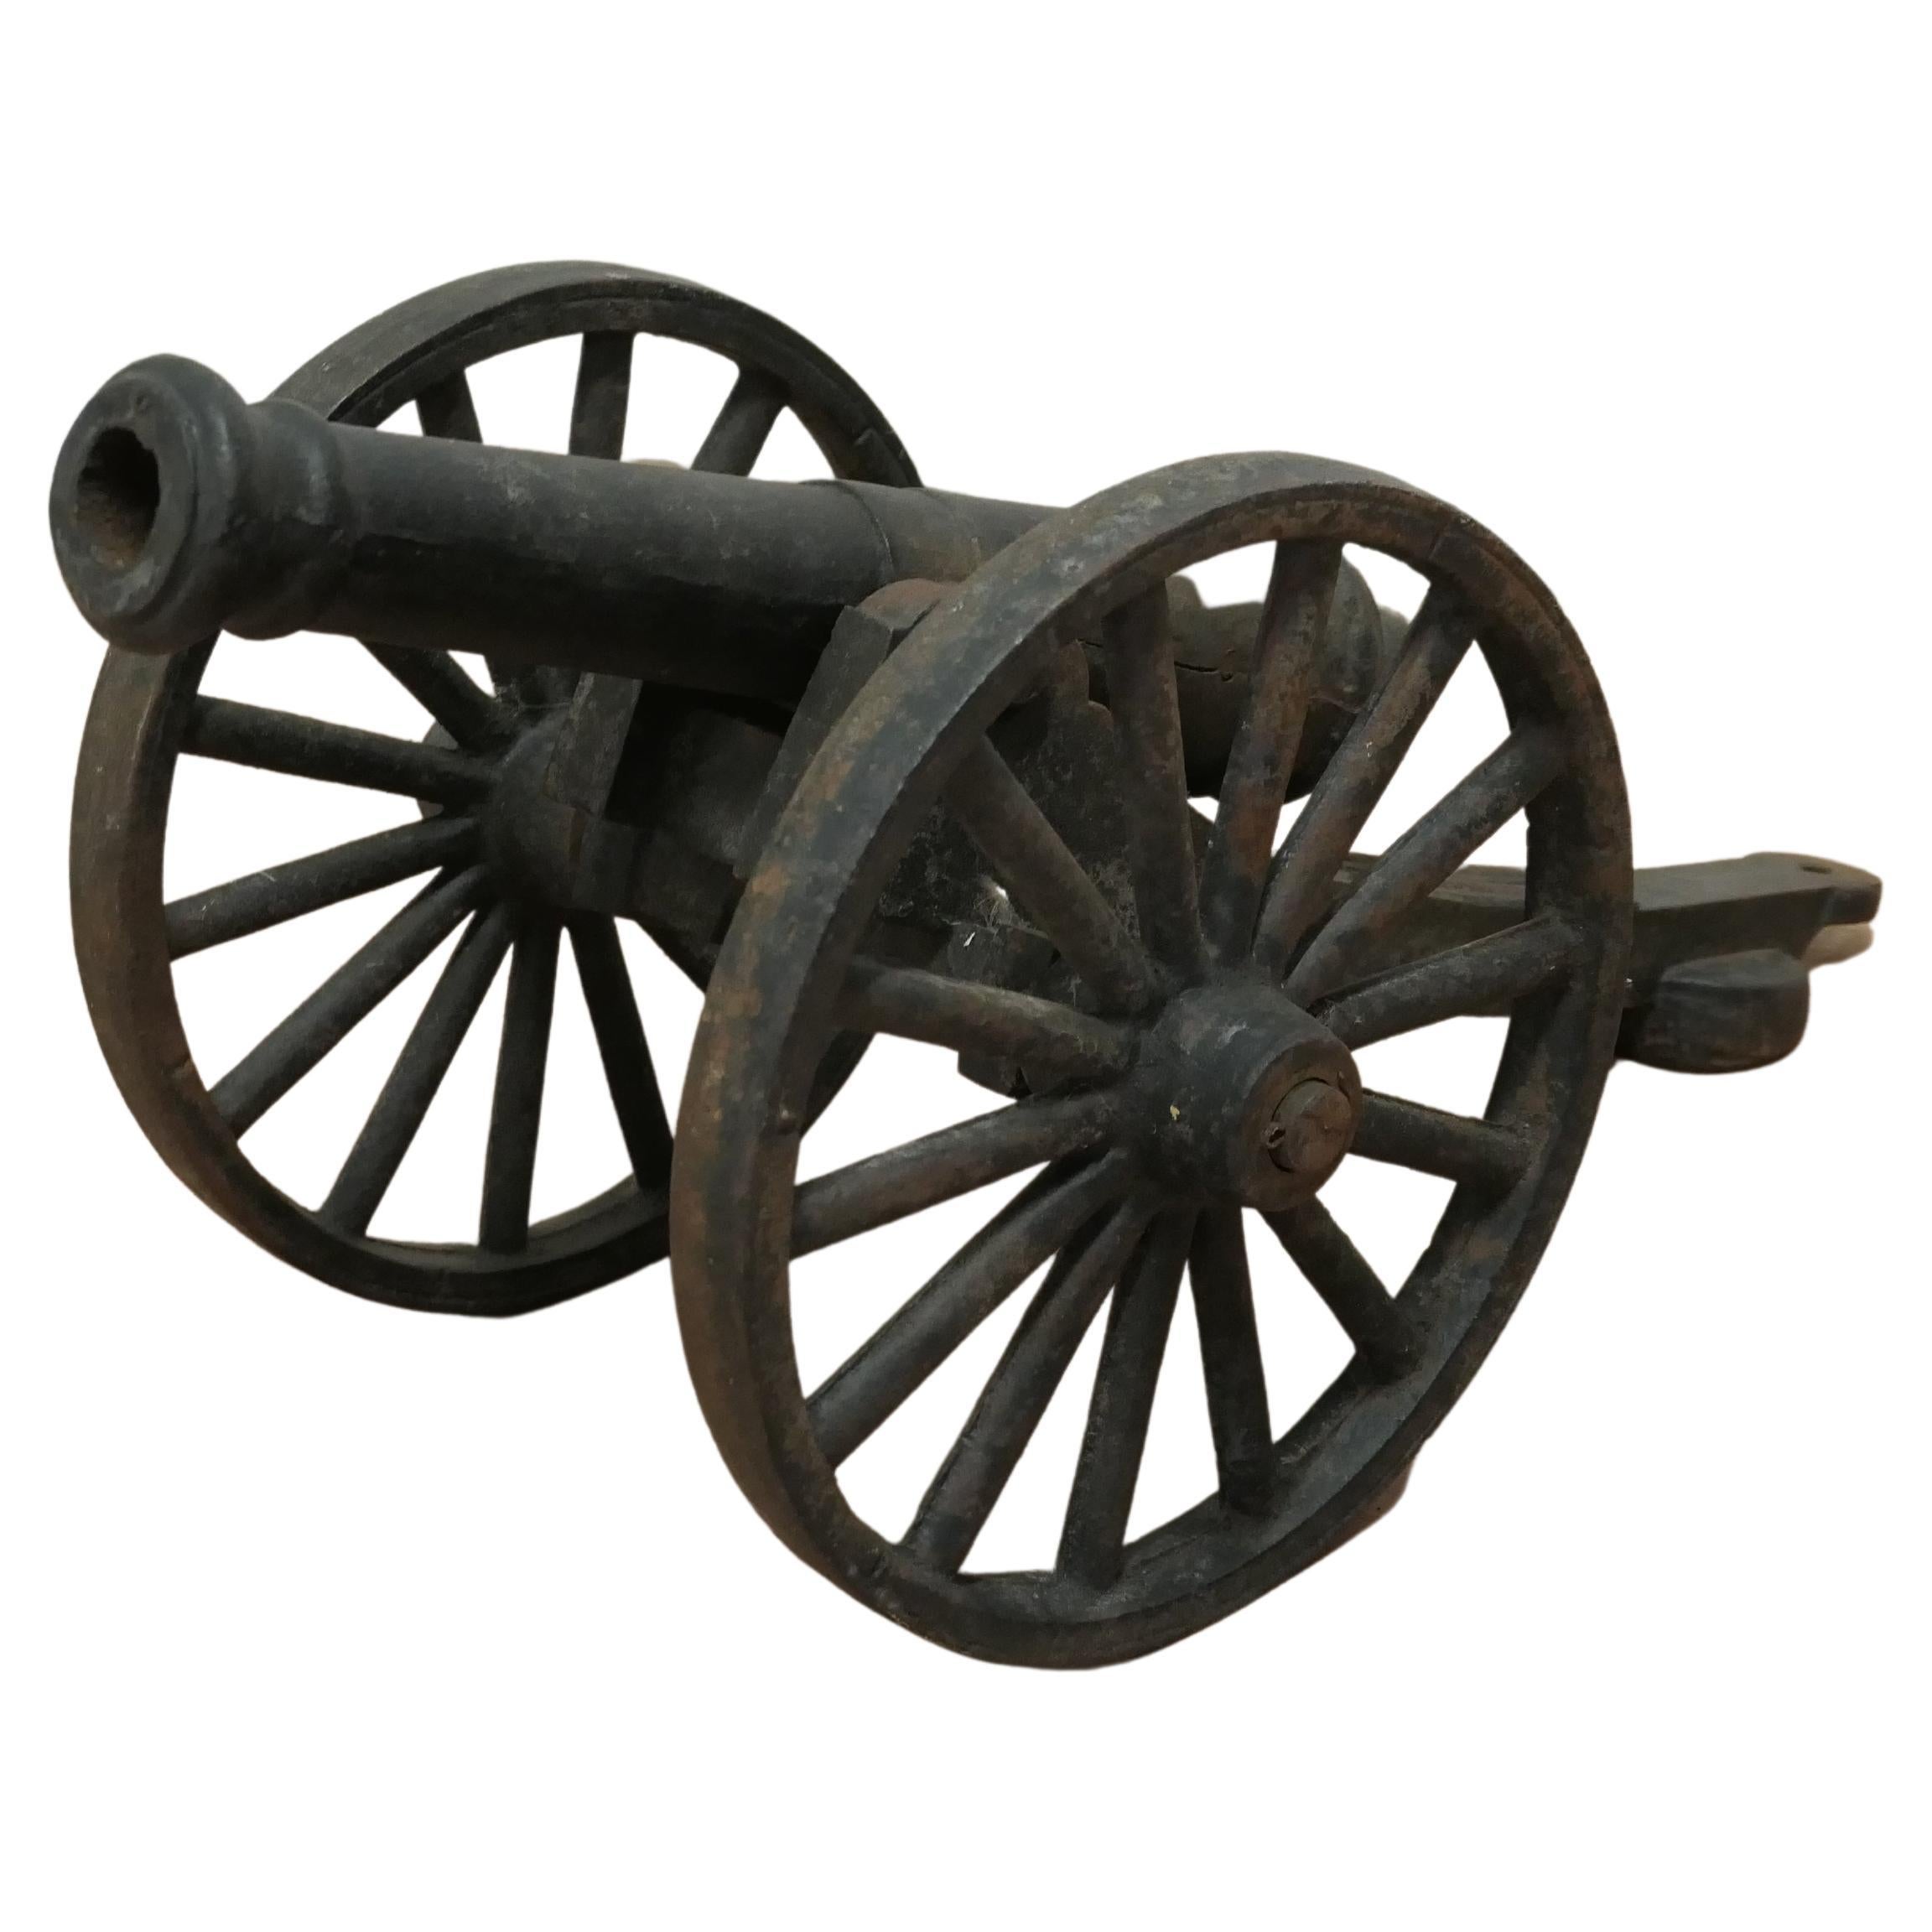 Modèle réduit de terrain à canon sur chariot du 19ème siècle, canon de porche en fonte